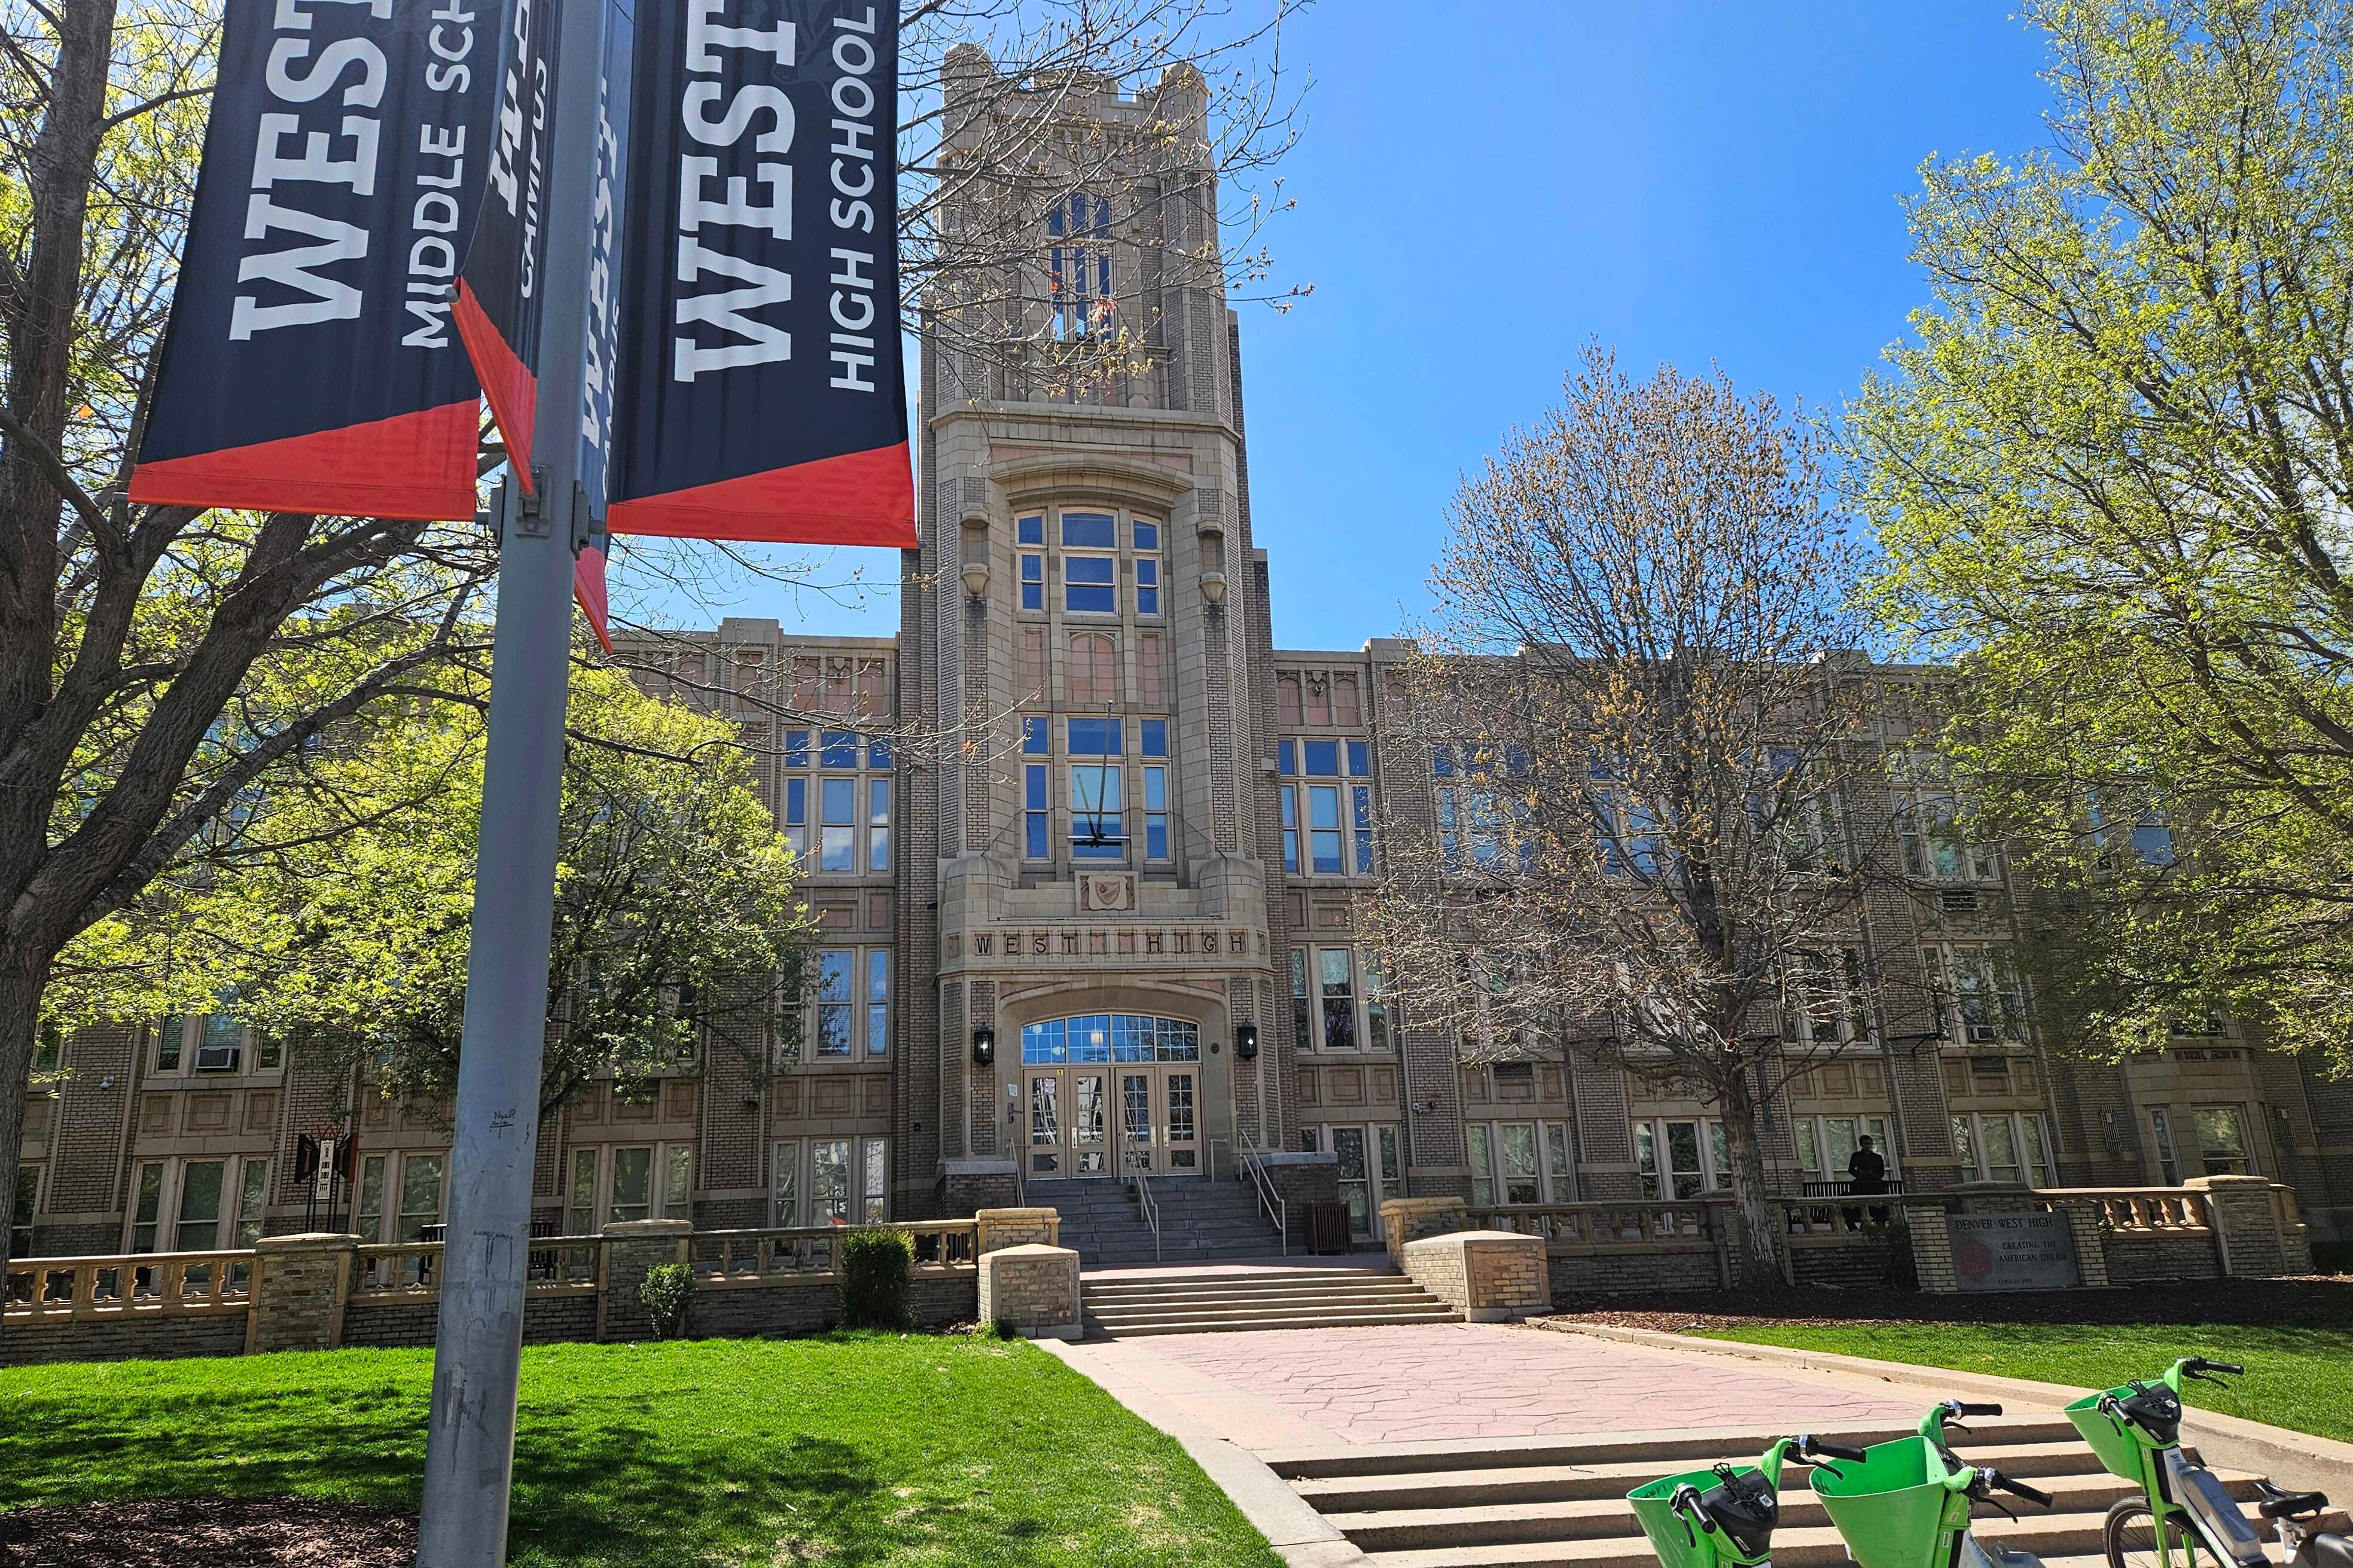 An exterior of West High School.